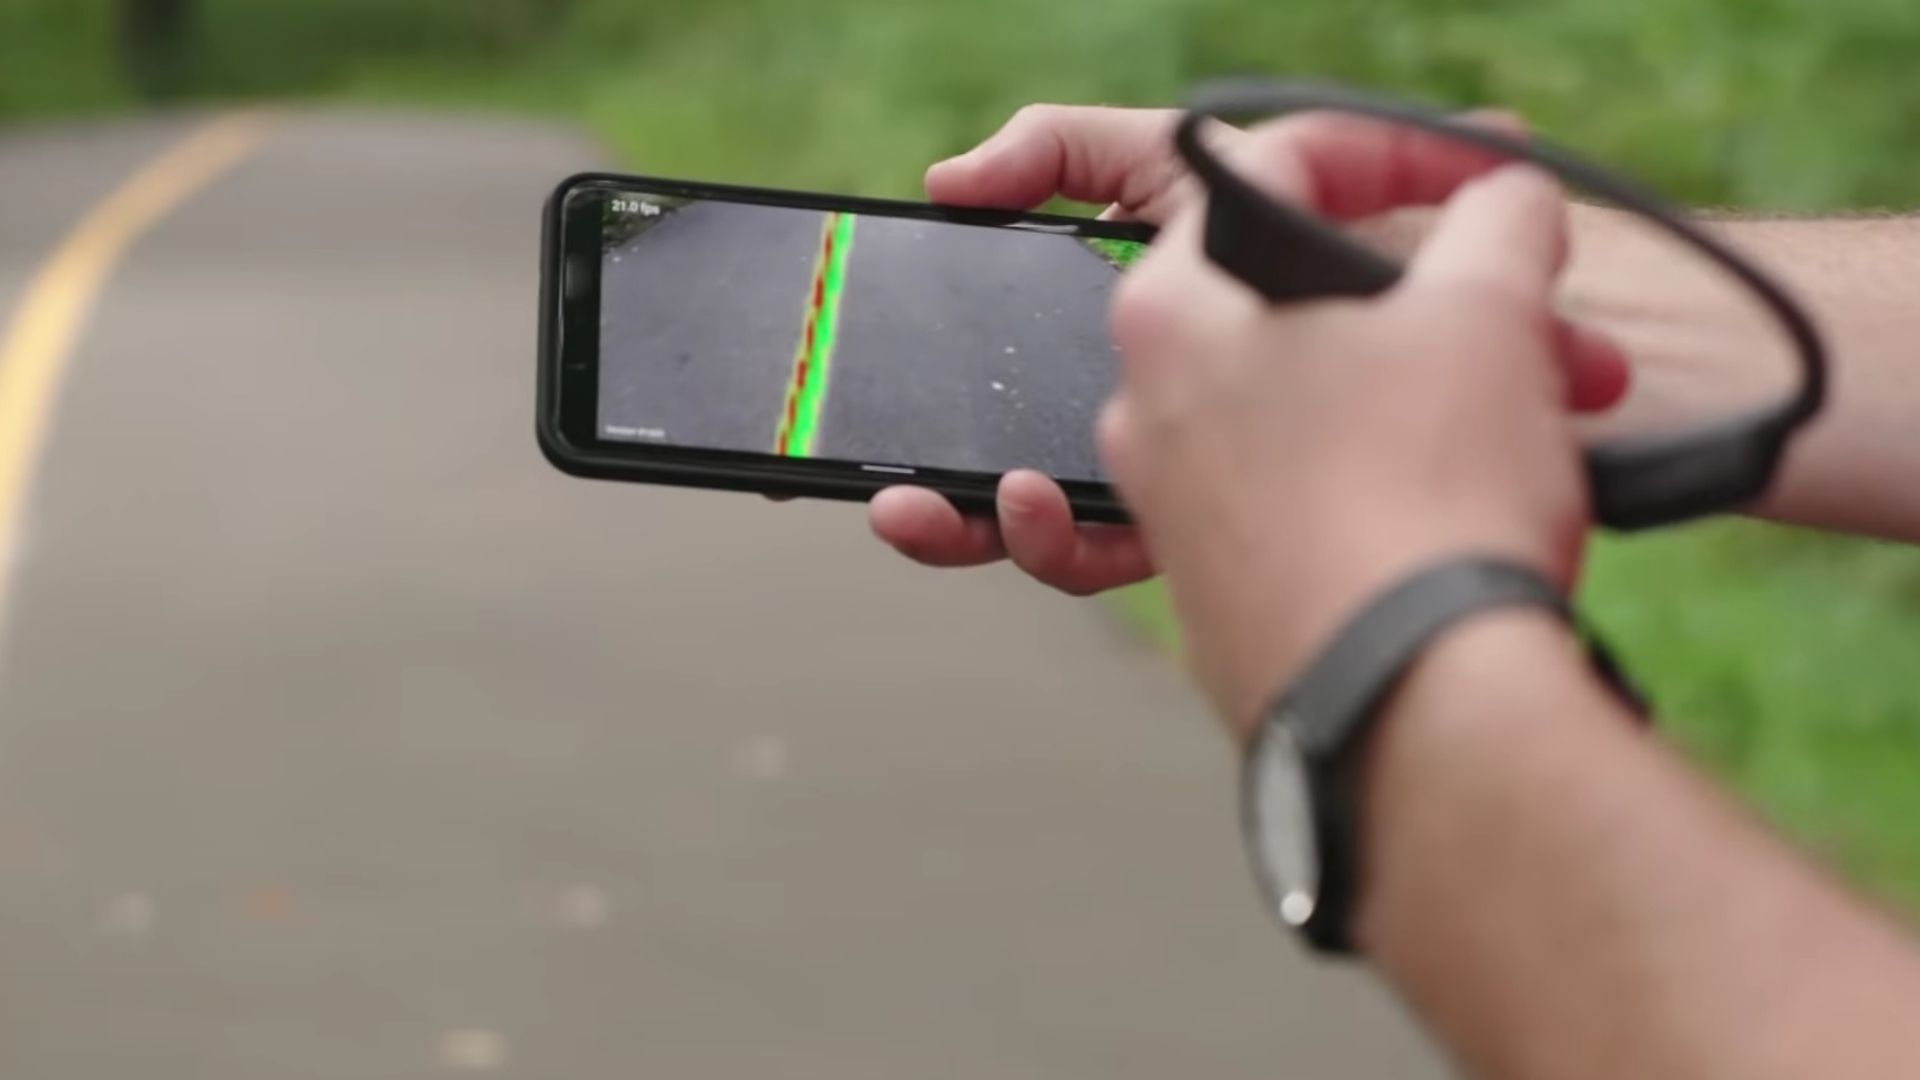 La cámara del móvil buscaba una guía física en el suelo y envía señales de audio según la posición en la que está el usuario.